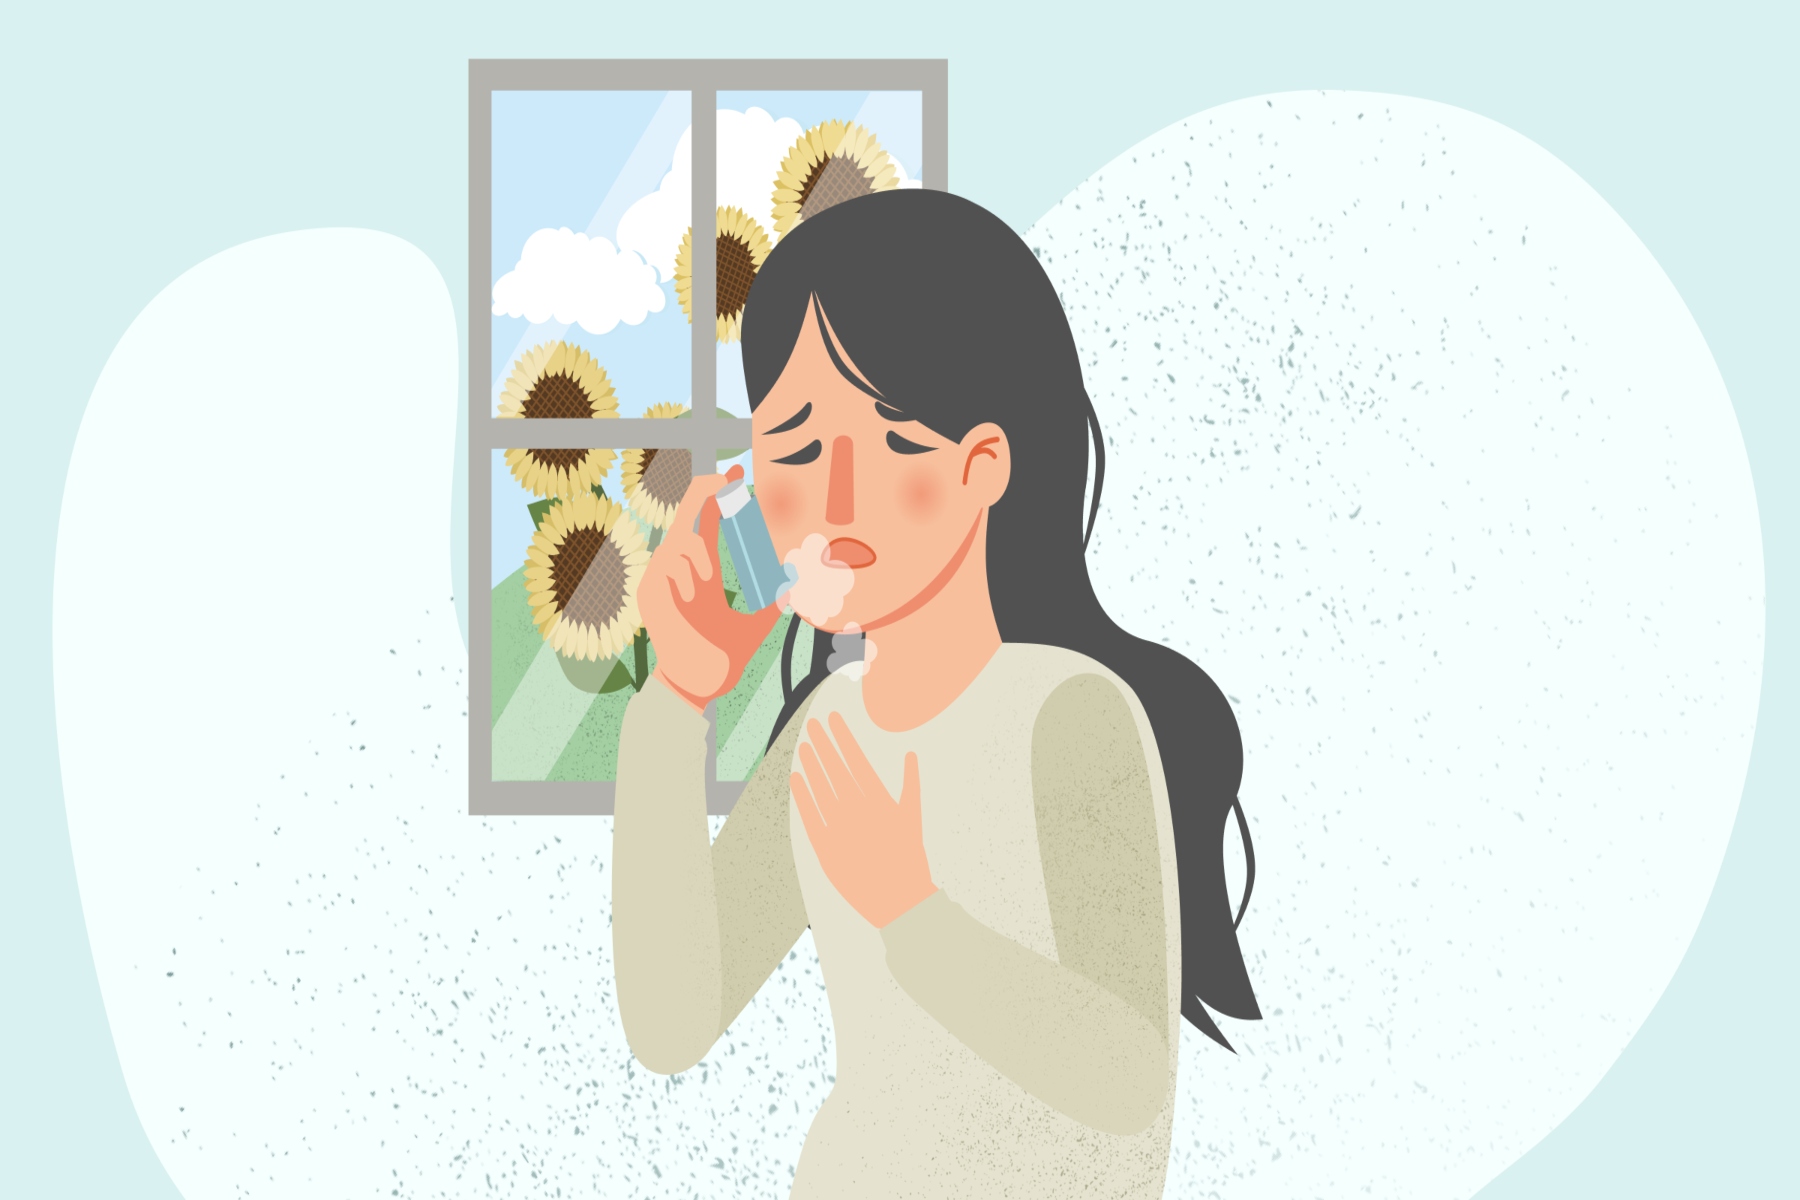 Έρευνα άσθμα: Ανοίγει ο δρόμος για μια επαναστατική θεραπεία του άσθματος